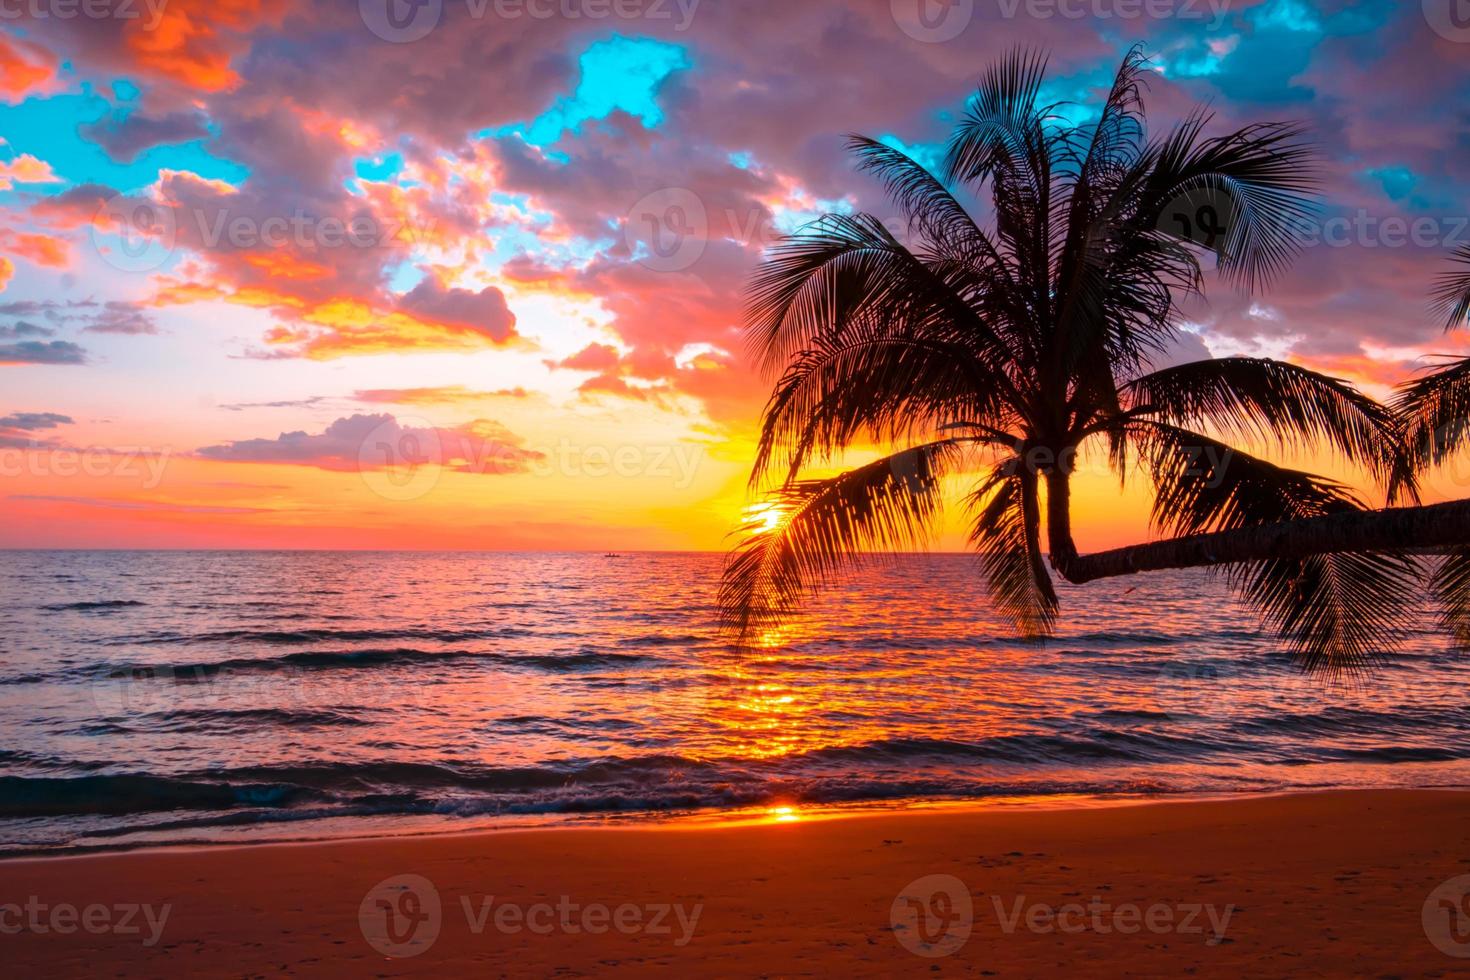 silhueta de palmeiras belo pôr do sol no fundo da praia do mar tropical para viajar no tempo de relaxamento de férias, foto